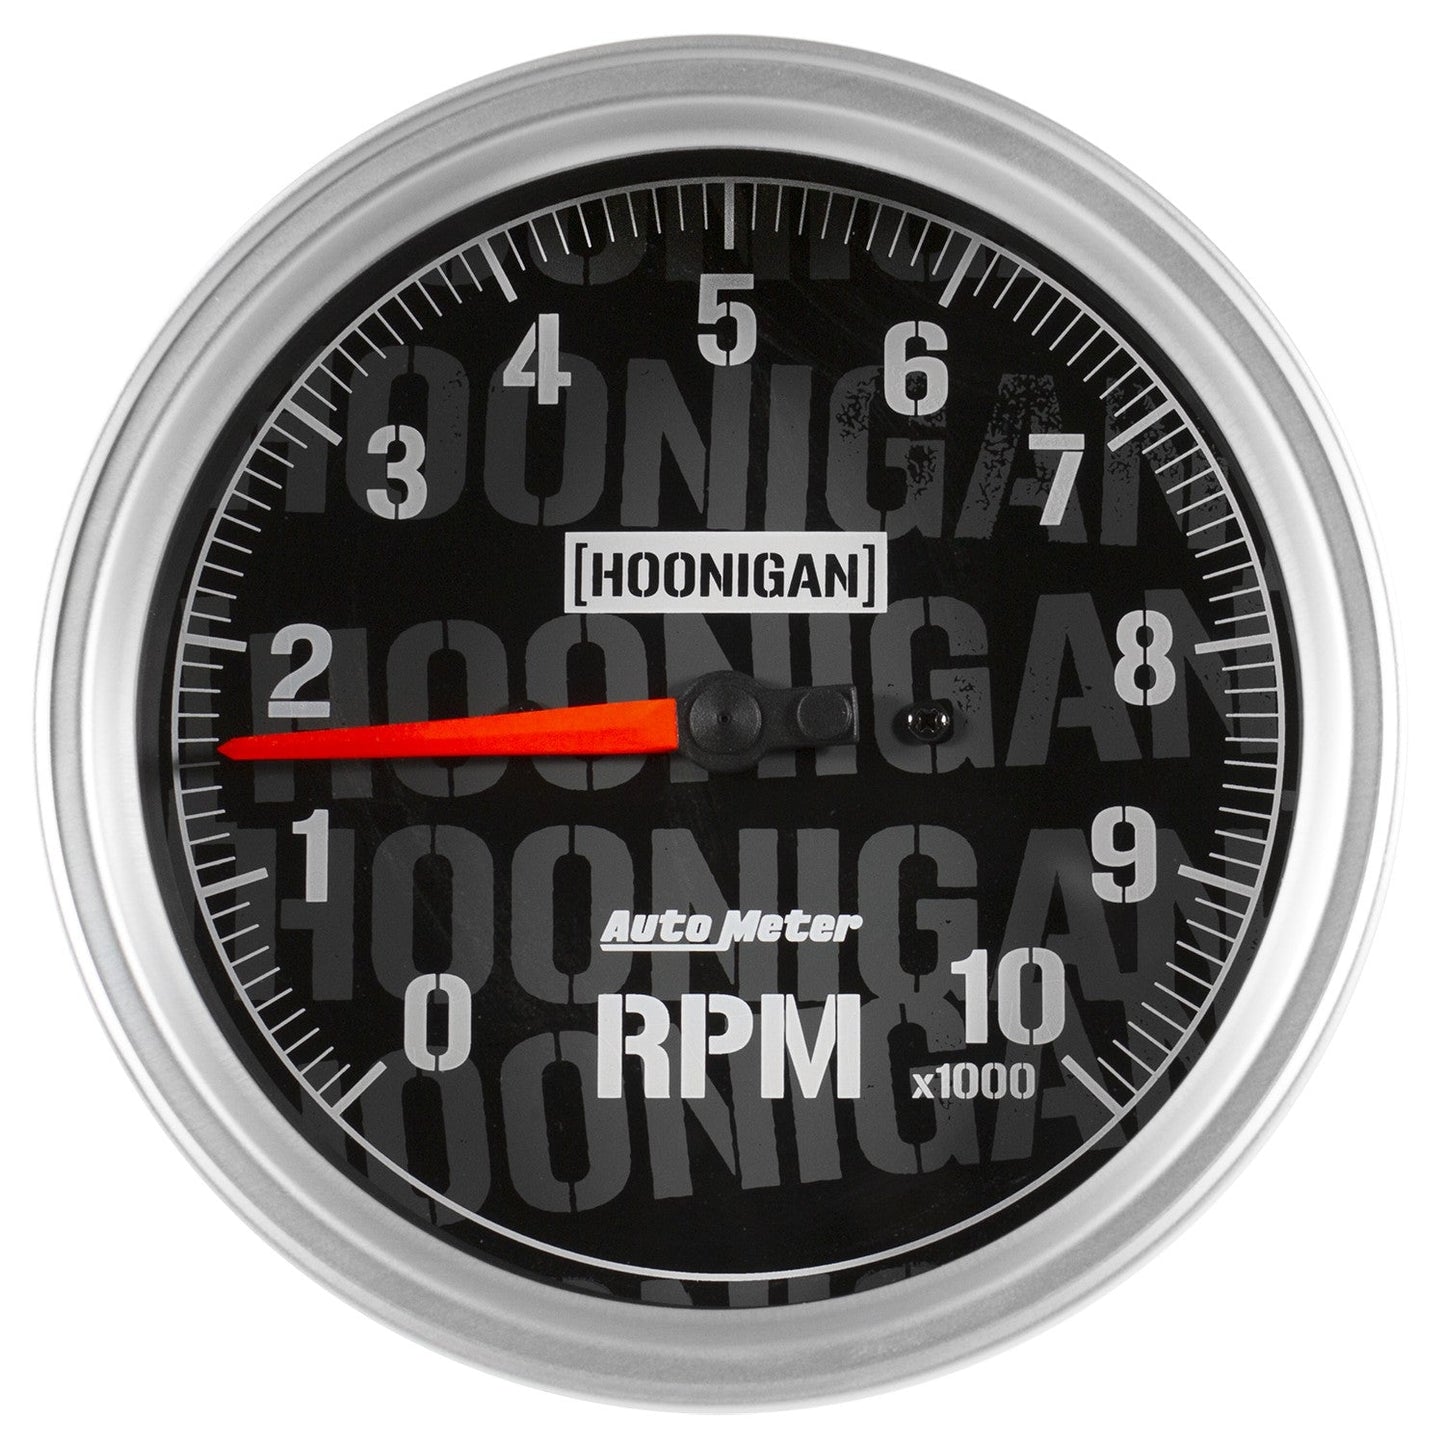 AutoMeter - TACÔMETRO DE 5", 0-10.000 RPM, IN-DASH, HOONIGAN (4498-09000)